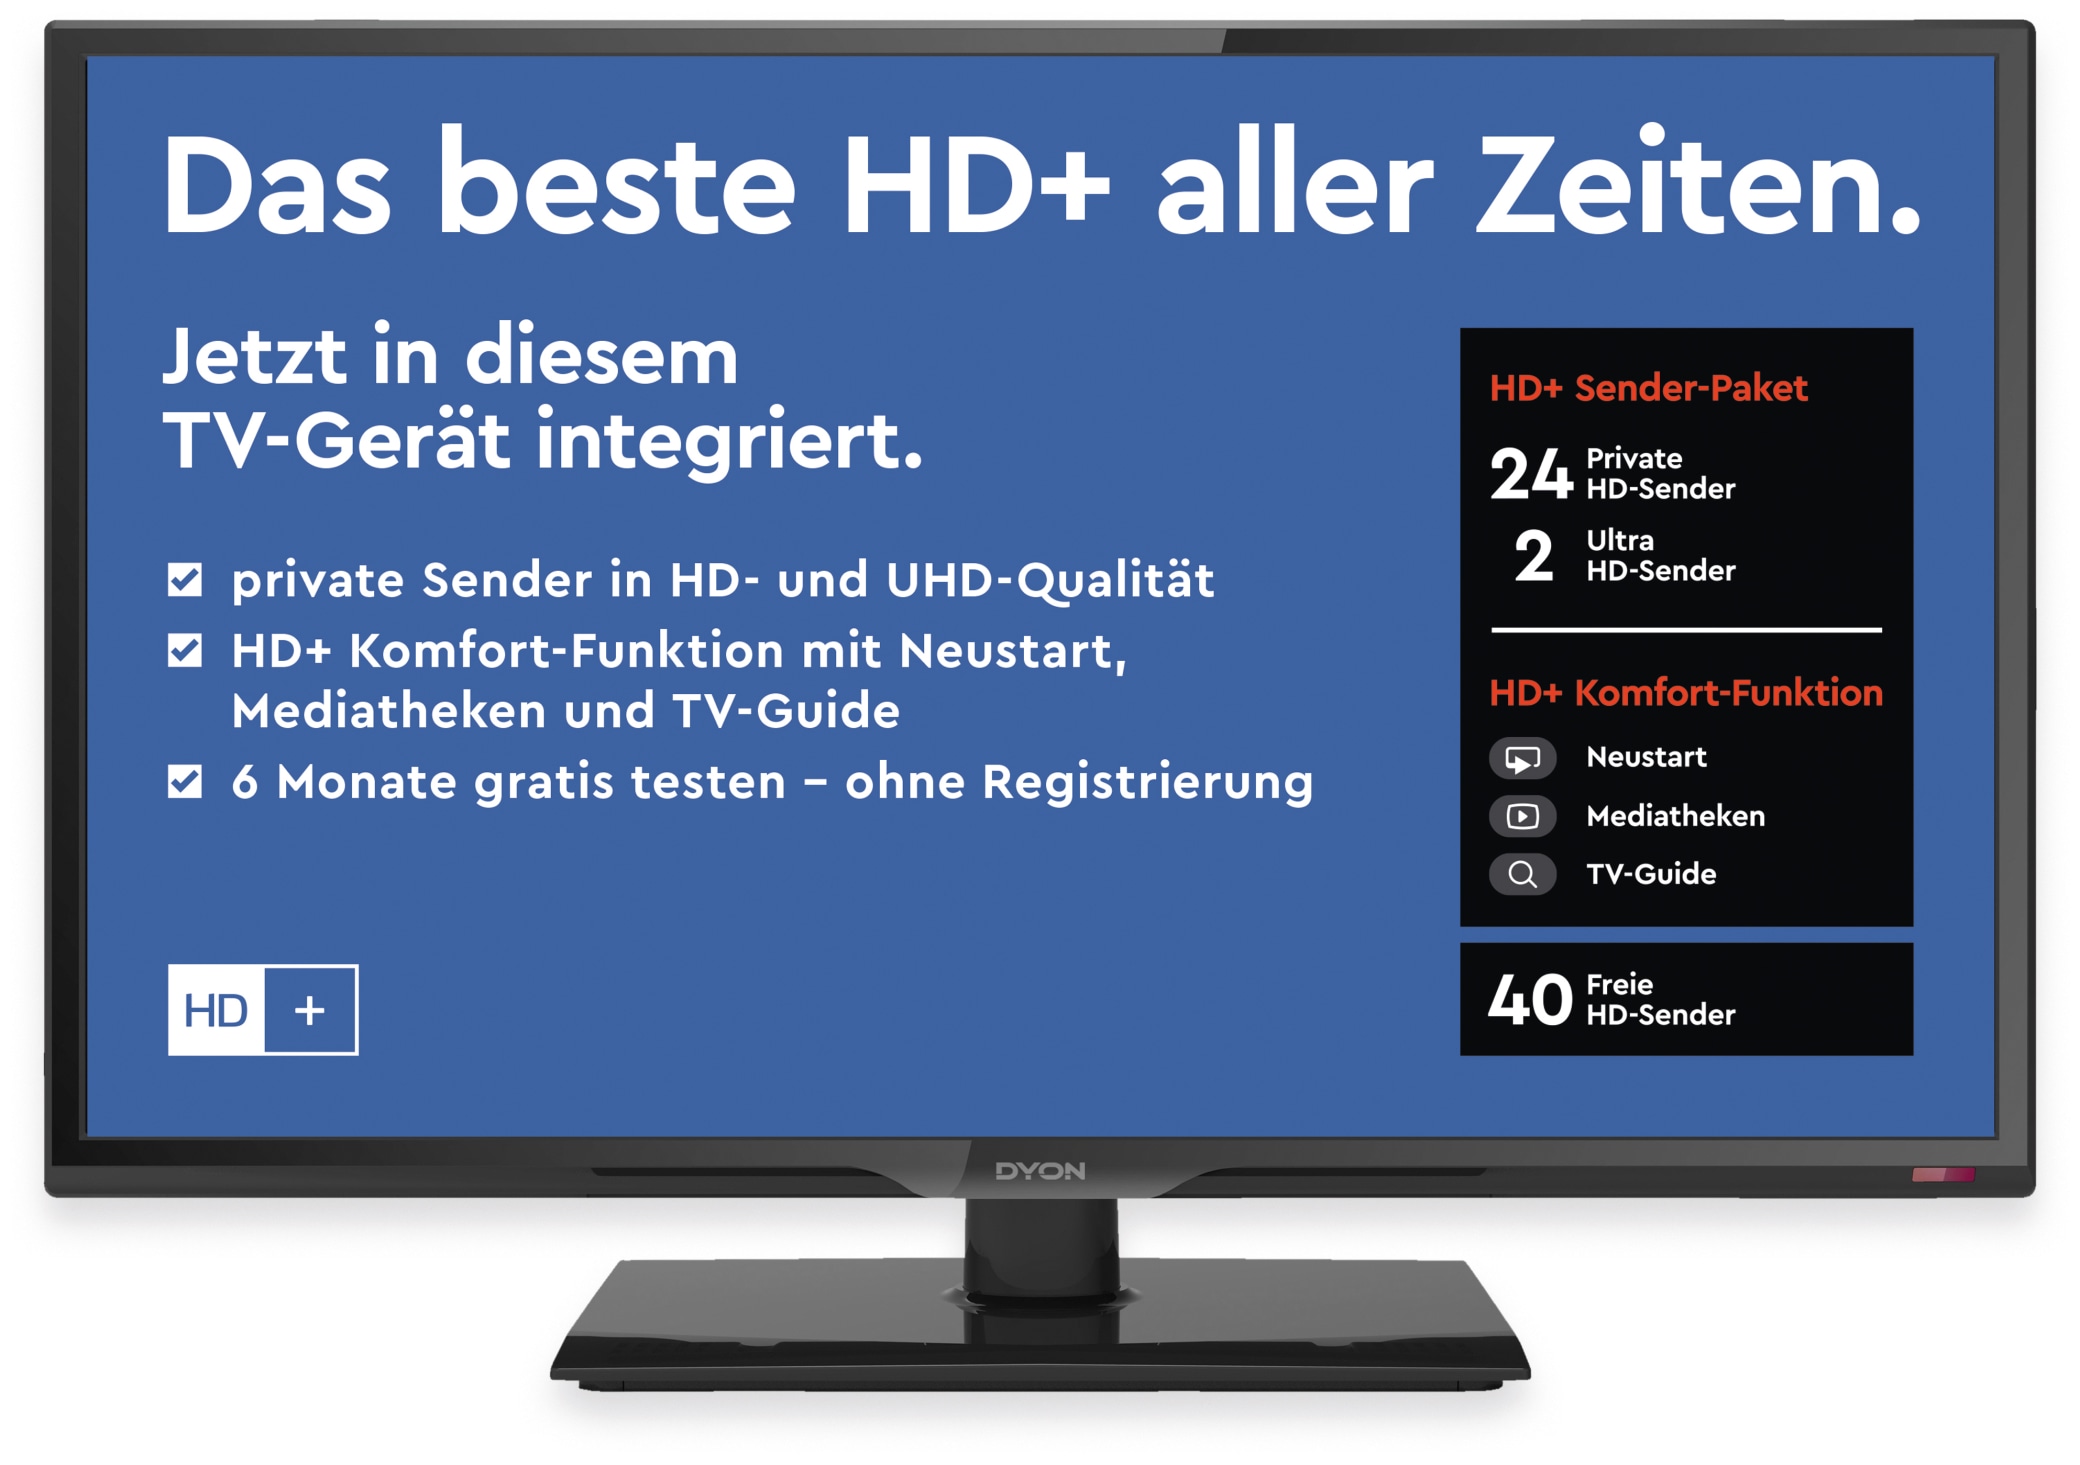 Dyon LED-TV Live 24C, 60 cm (23,6"), Full HD, EEK: A, inkl. HD+